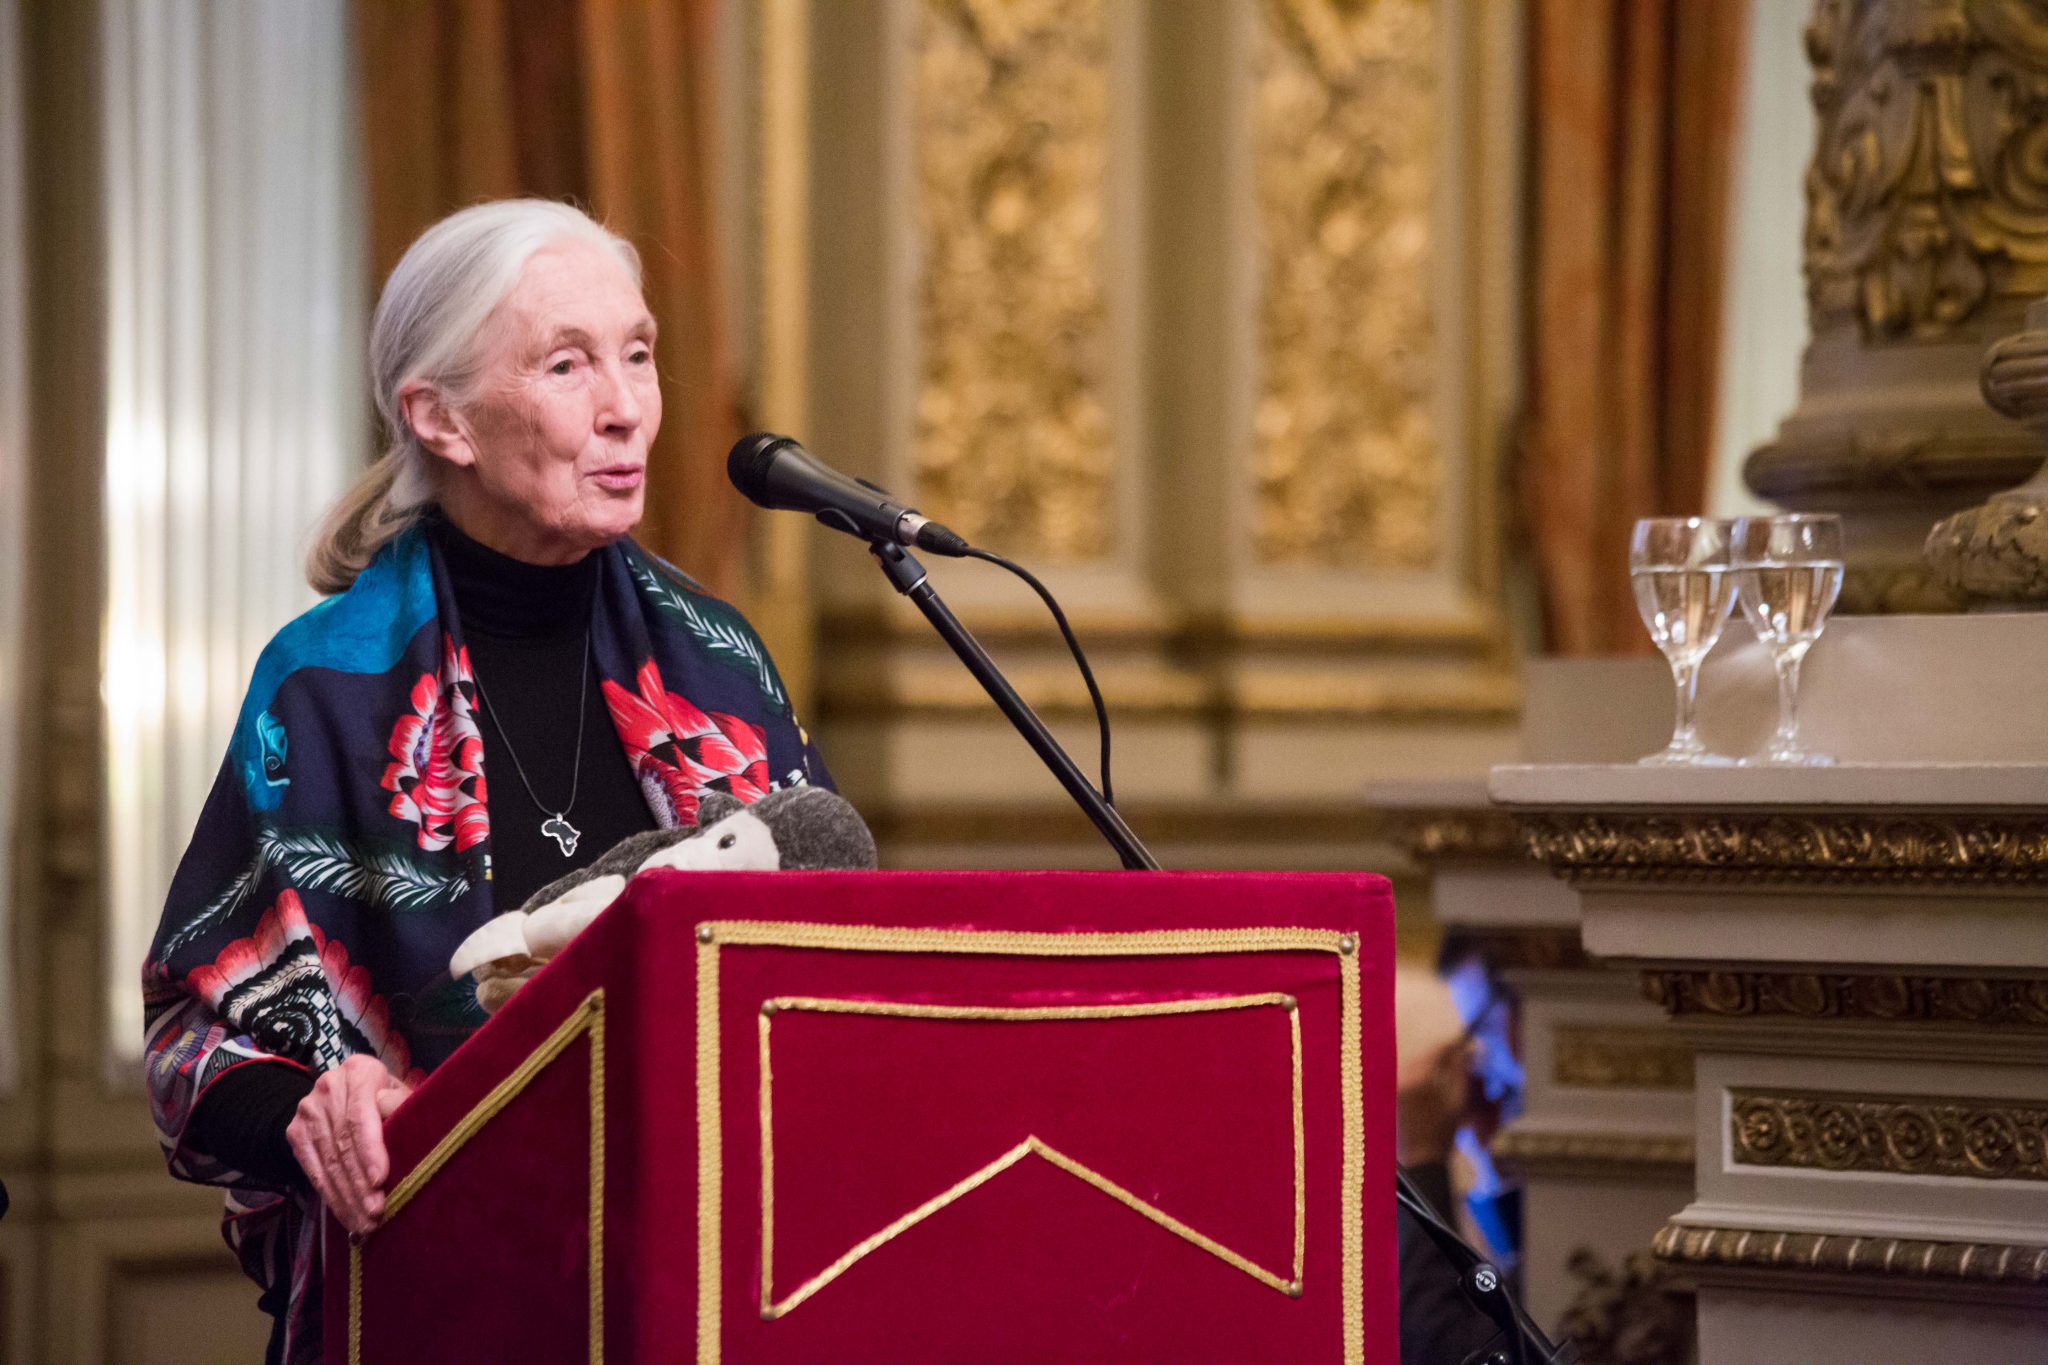 Instituto Jane Goodall